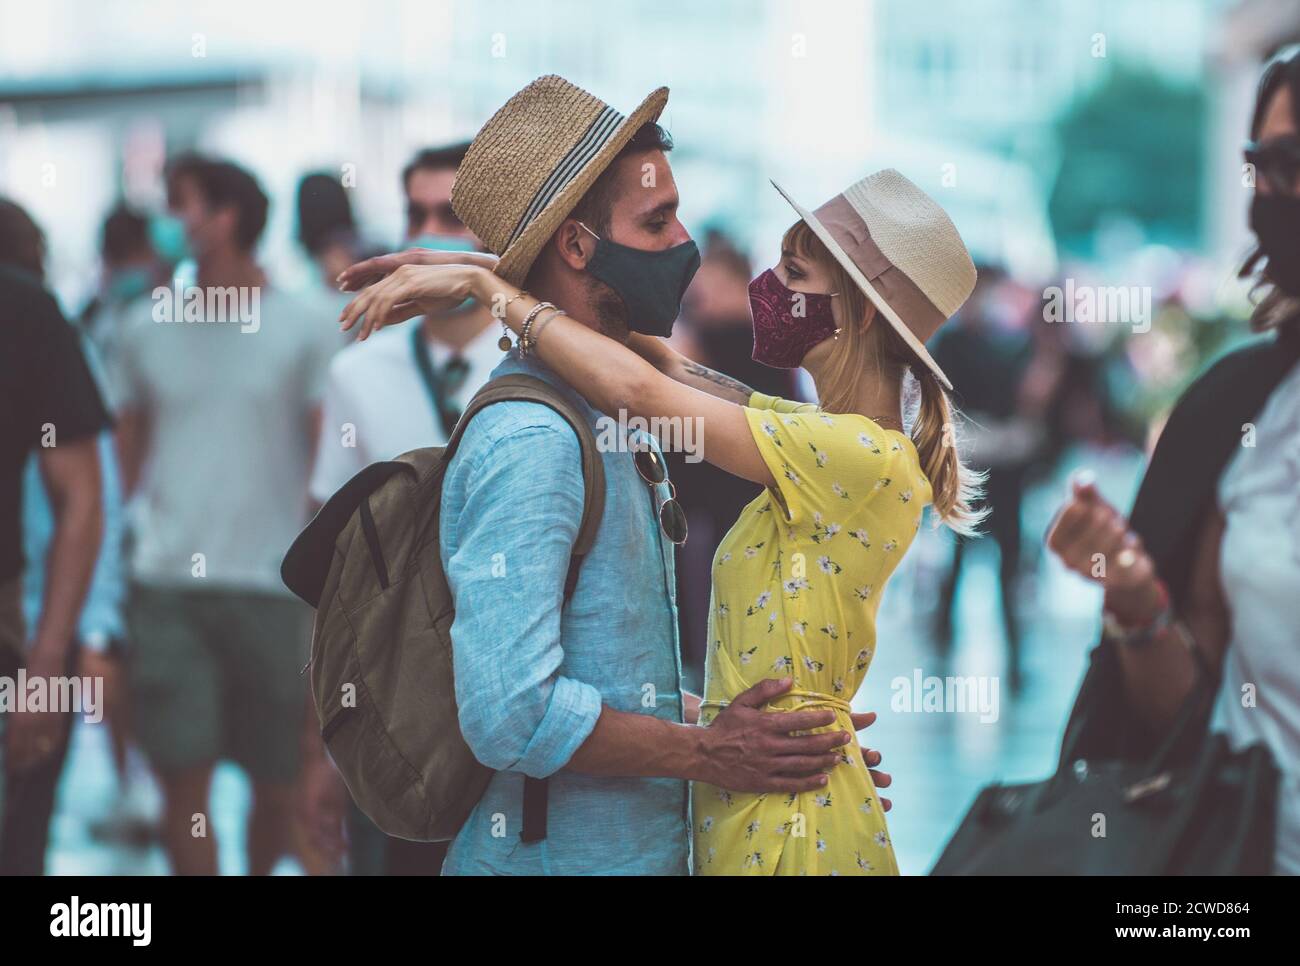 Immagine di una coppia felice in vacanza. Giovane uomo e donna che baciano nella folla Foto Stock